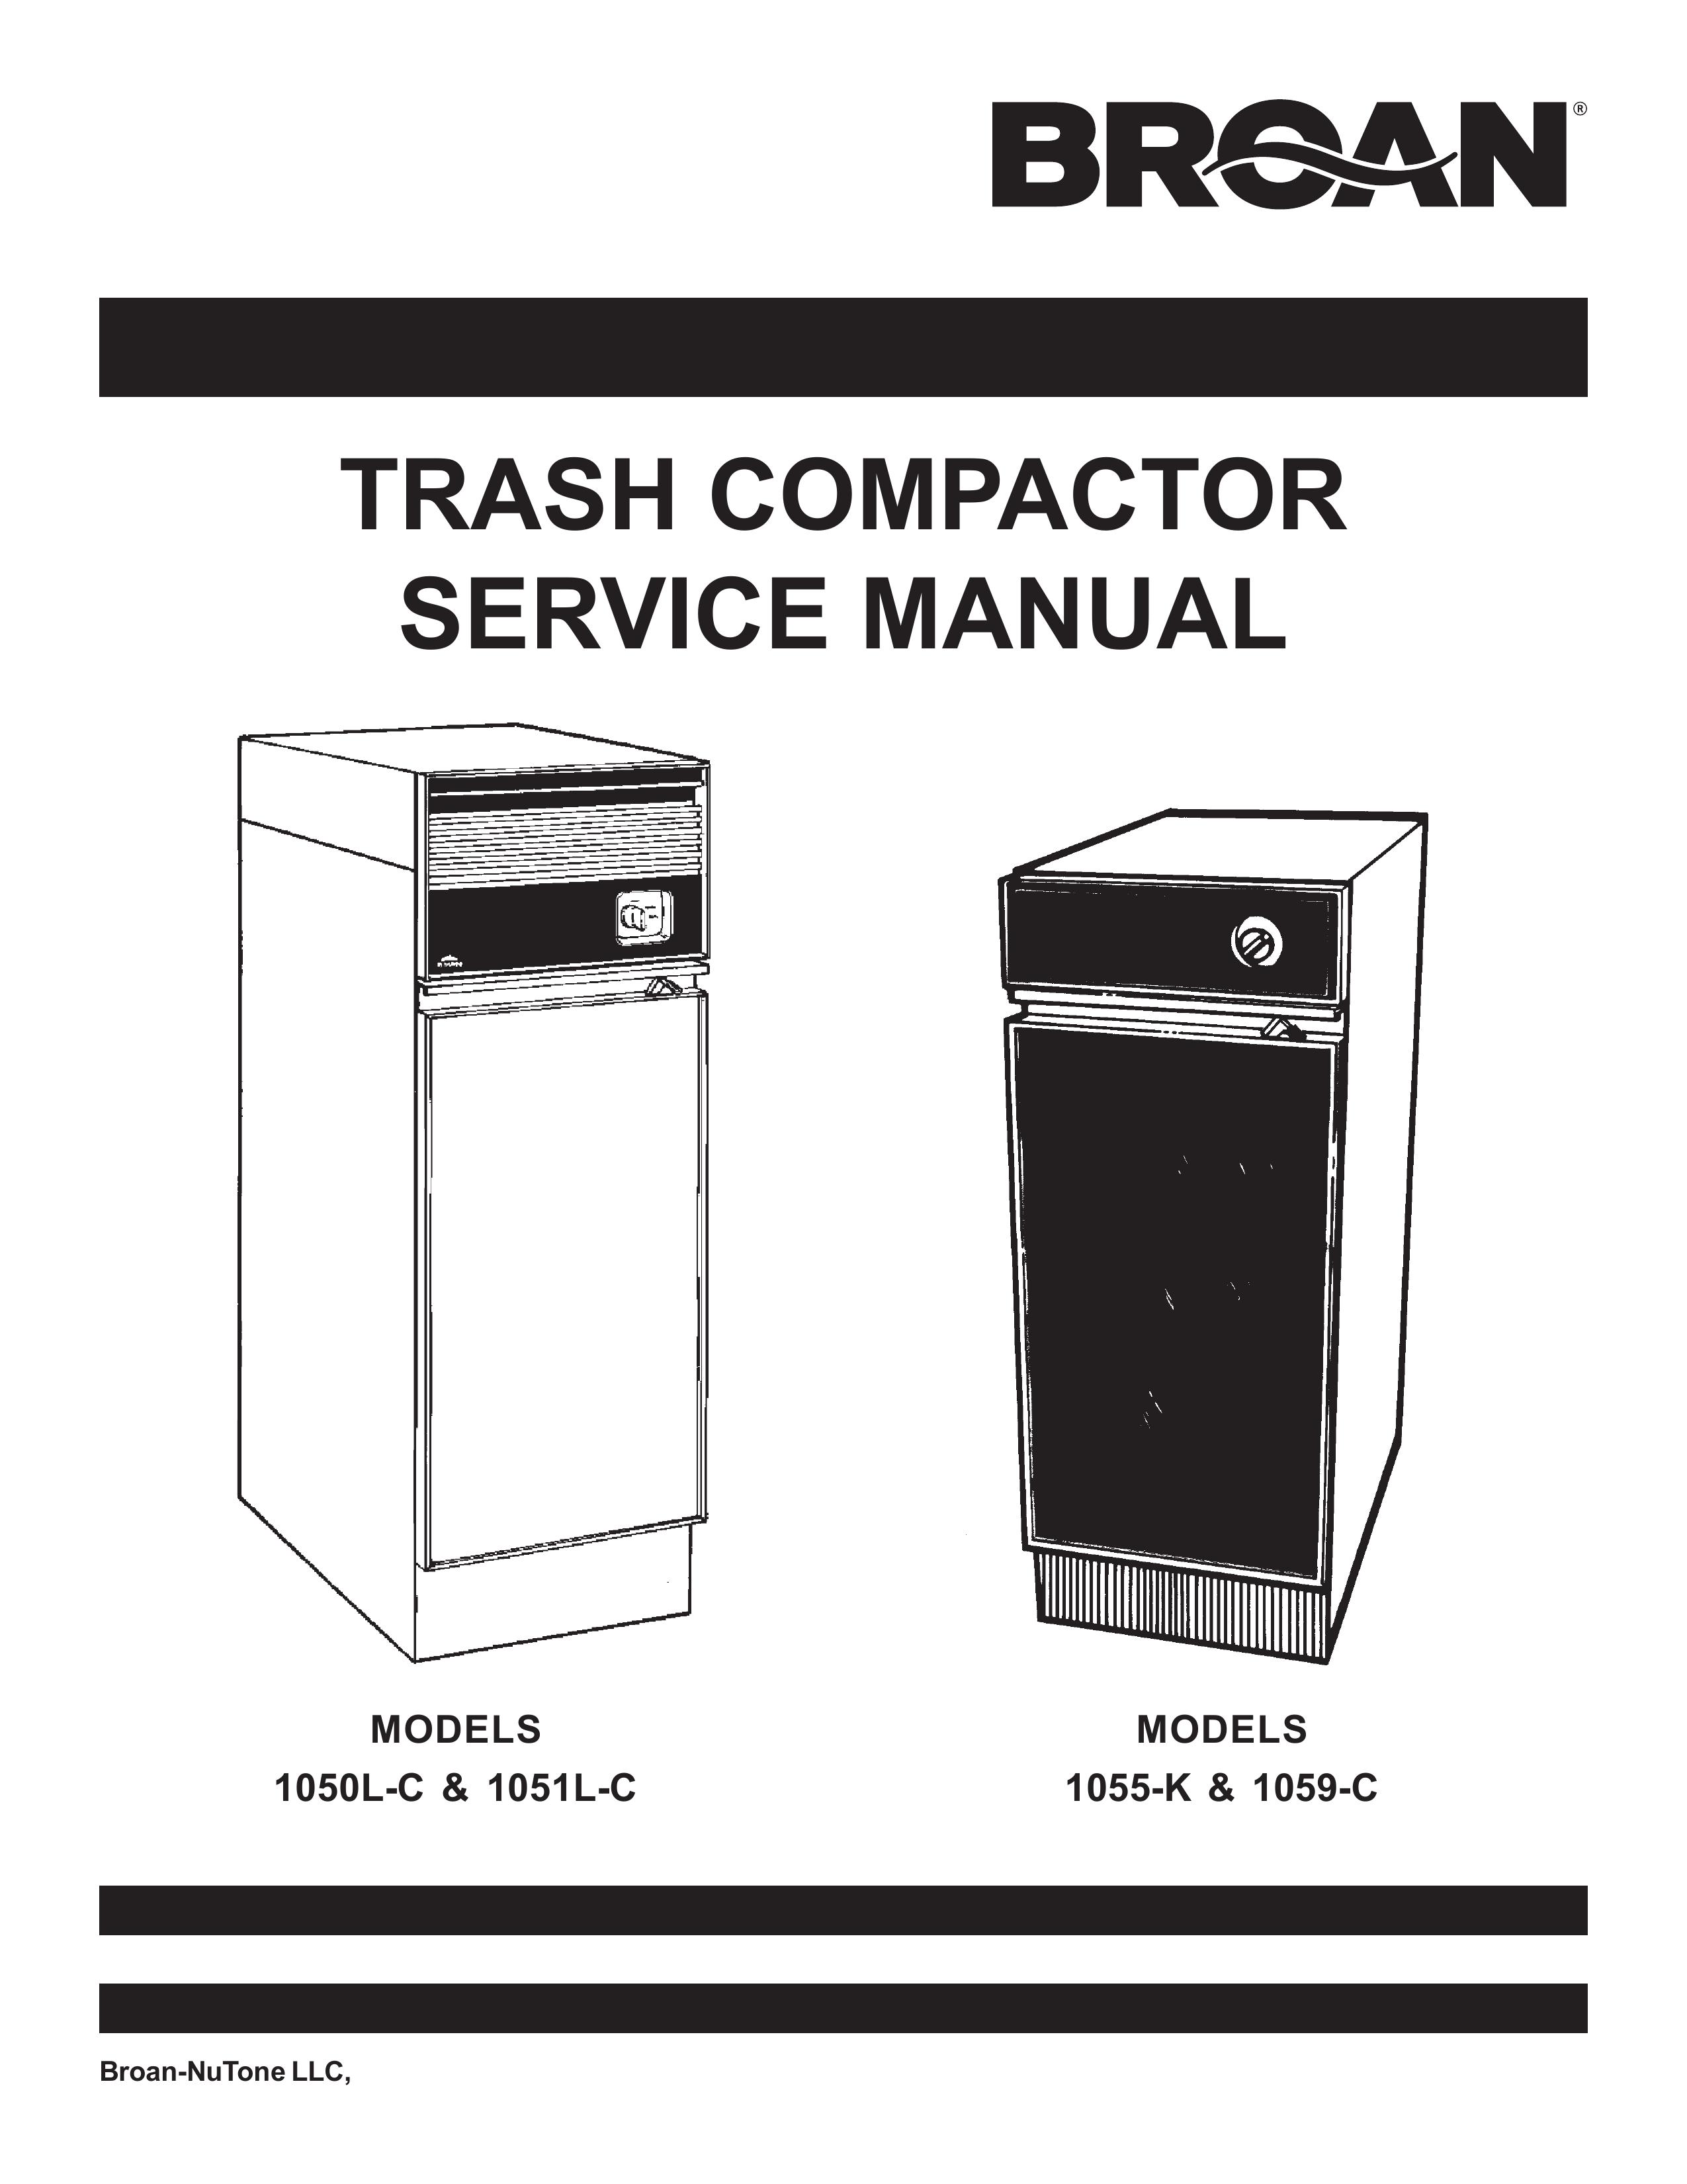 Broan 1059-C Trash Compactor User Manual